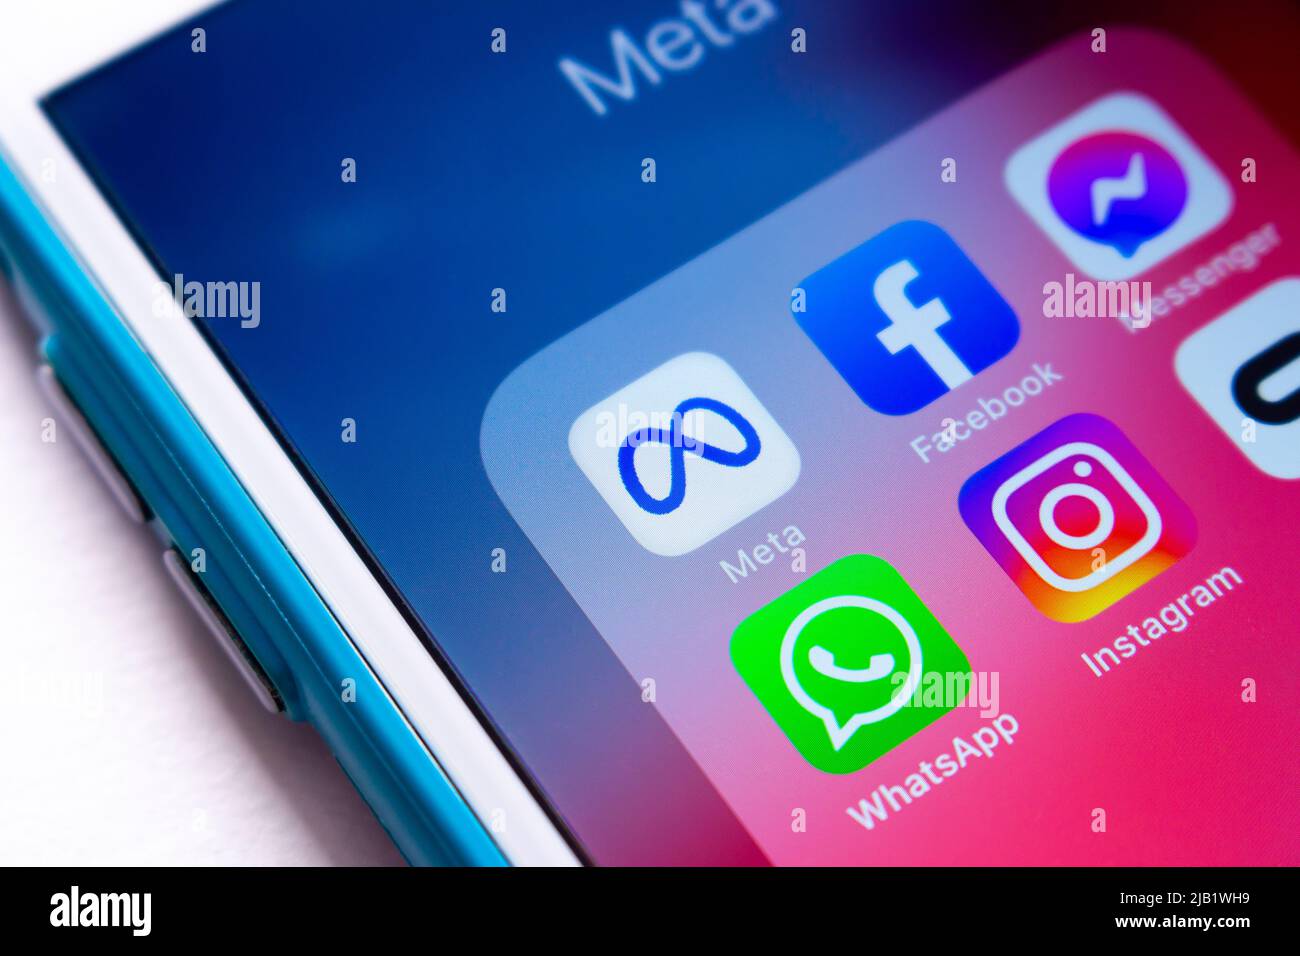 Icona di un conglomerato tecnologico statunitense Meta Platforms, Inc. E dei suoi altri marchi (Facebook, Messenger, WhatsApp, Instagram e Oculus VR) su iPhone Foto Stock